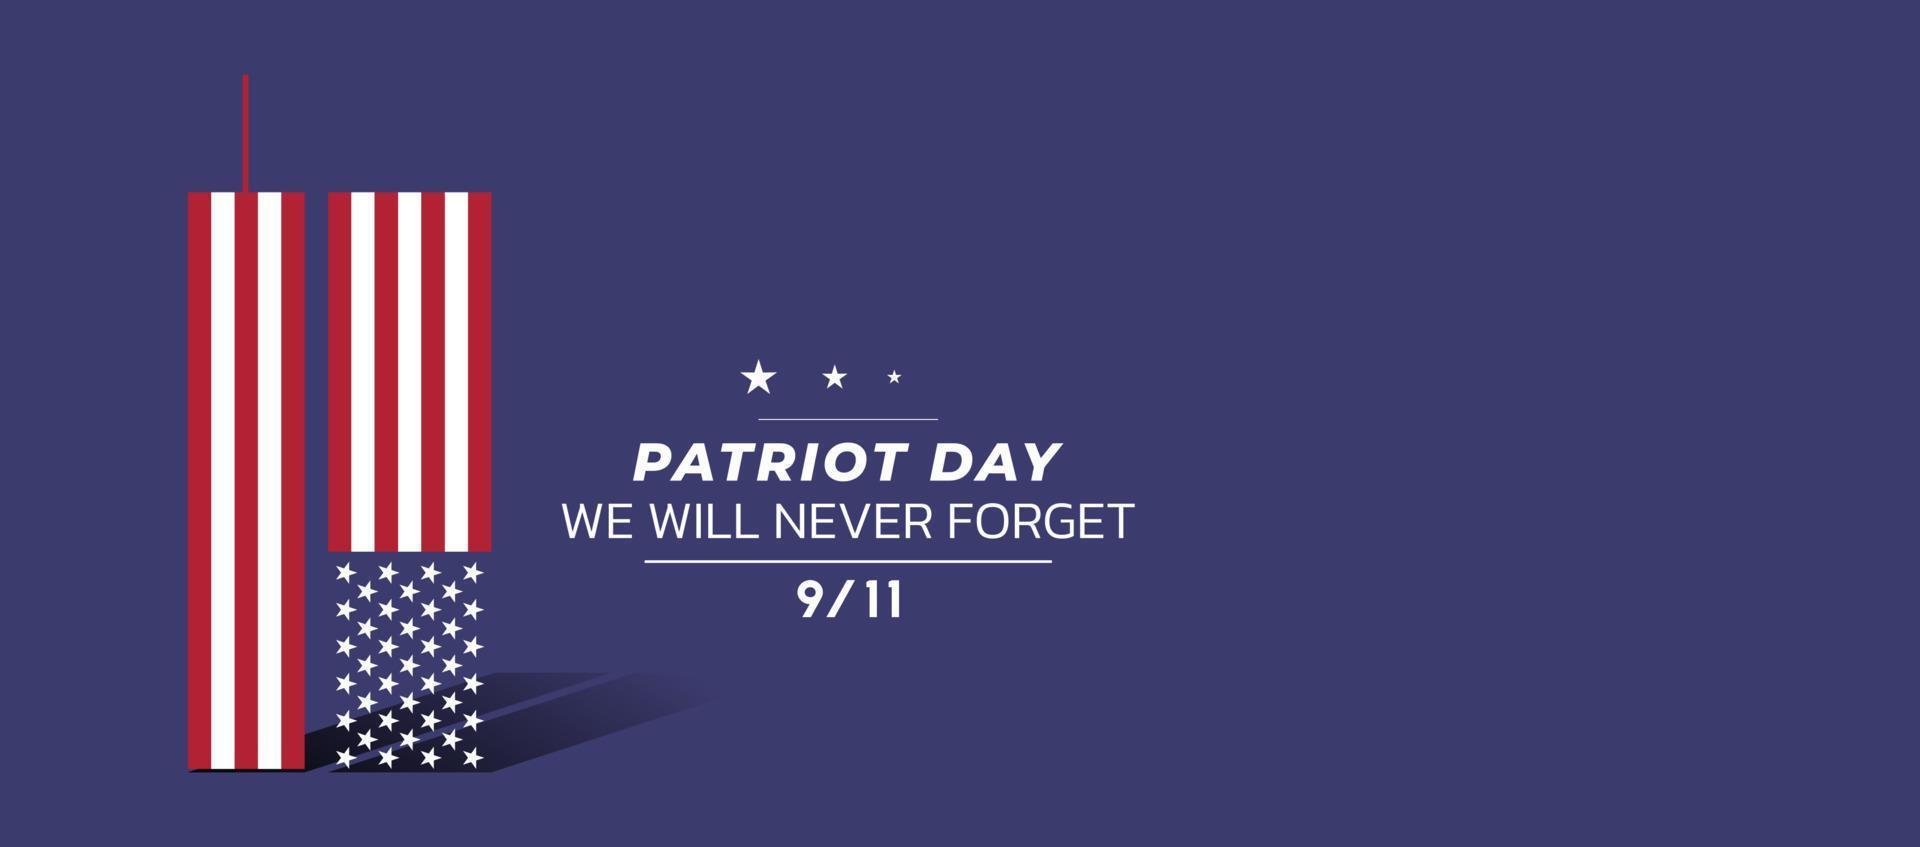 9 11 gedenktag 11. september. patriot tag nyc world trade center. Wir werden die Terroranschläge vom 11. September nie vergessen. World Trade Center mit einfachem Flaggenform-Symbol vektor